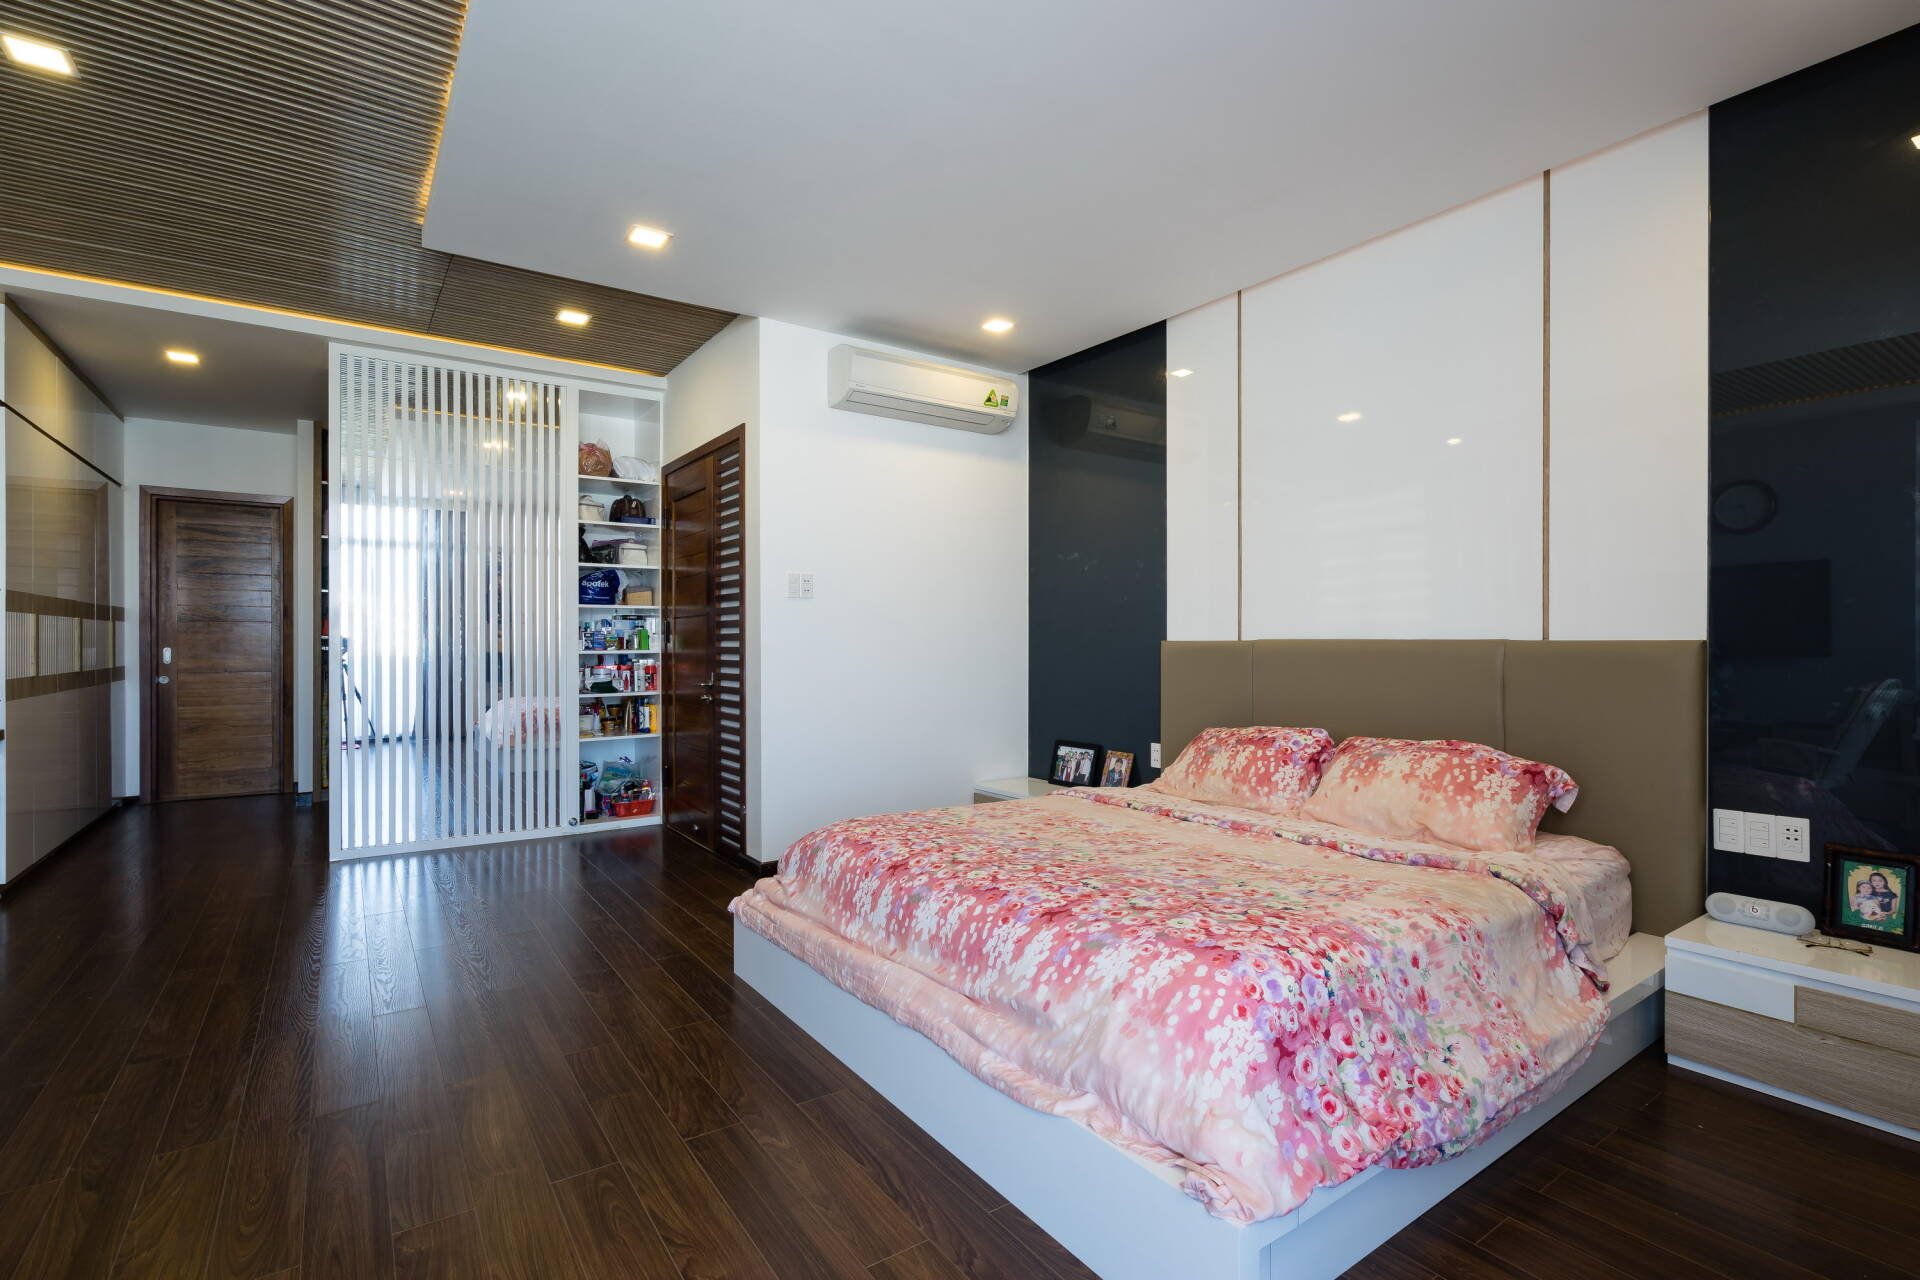  Các phòng ngủ có thiết kế tương tự nhau, sử dụng nội thất hiện đại, đơn giản.